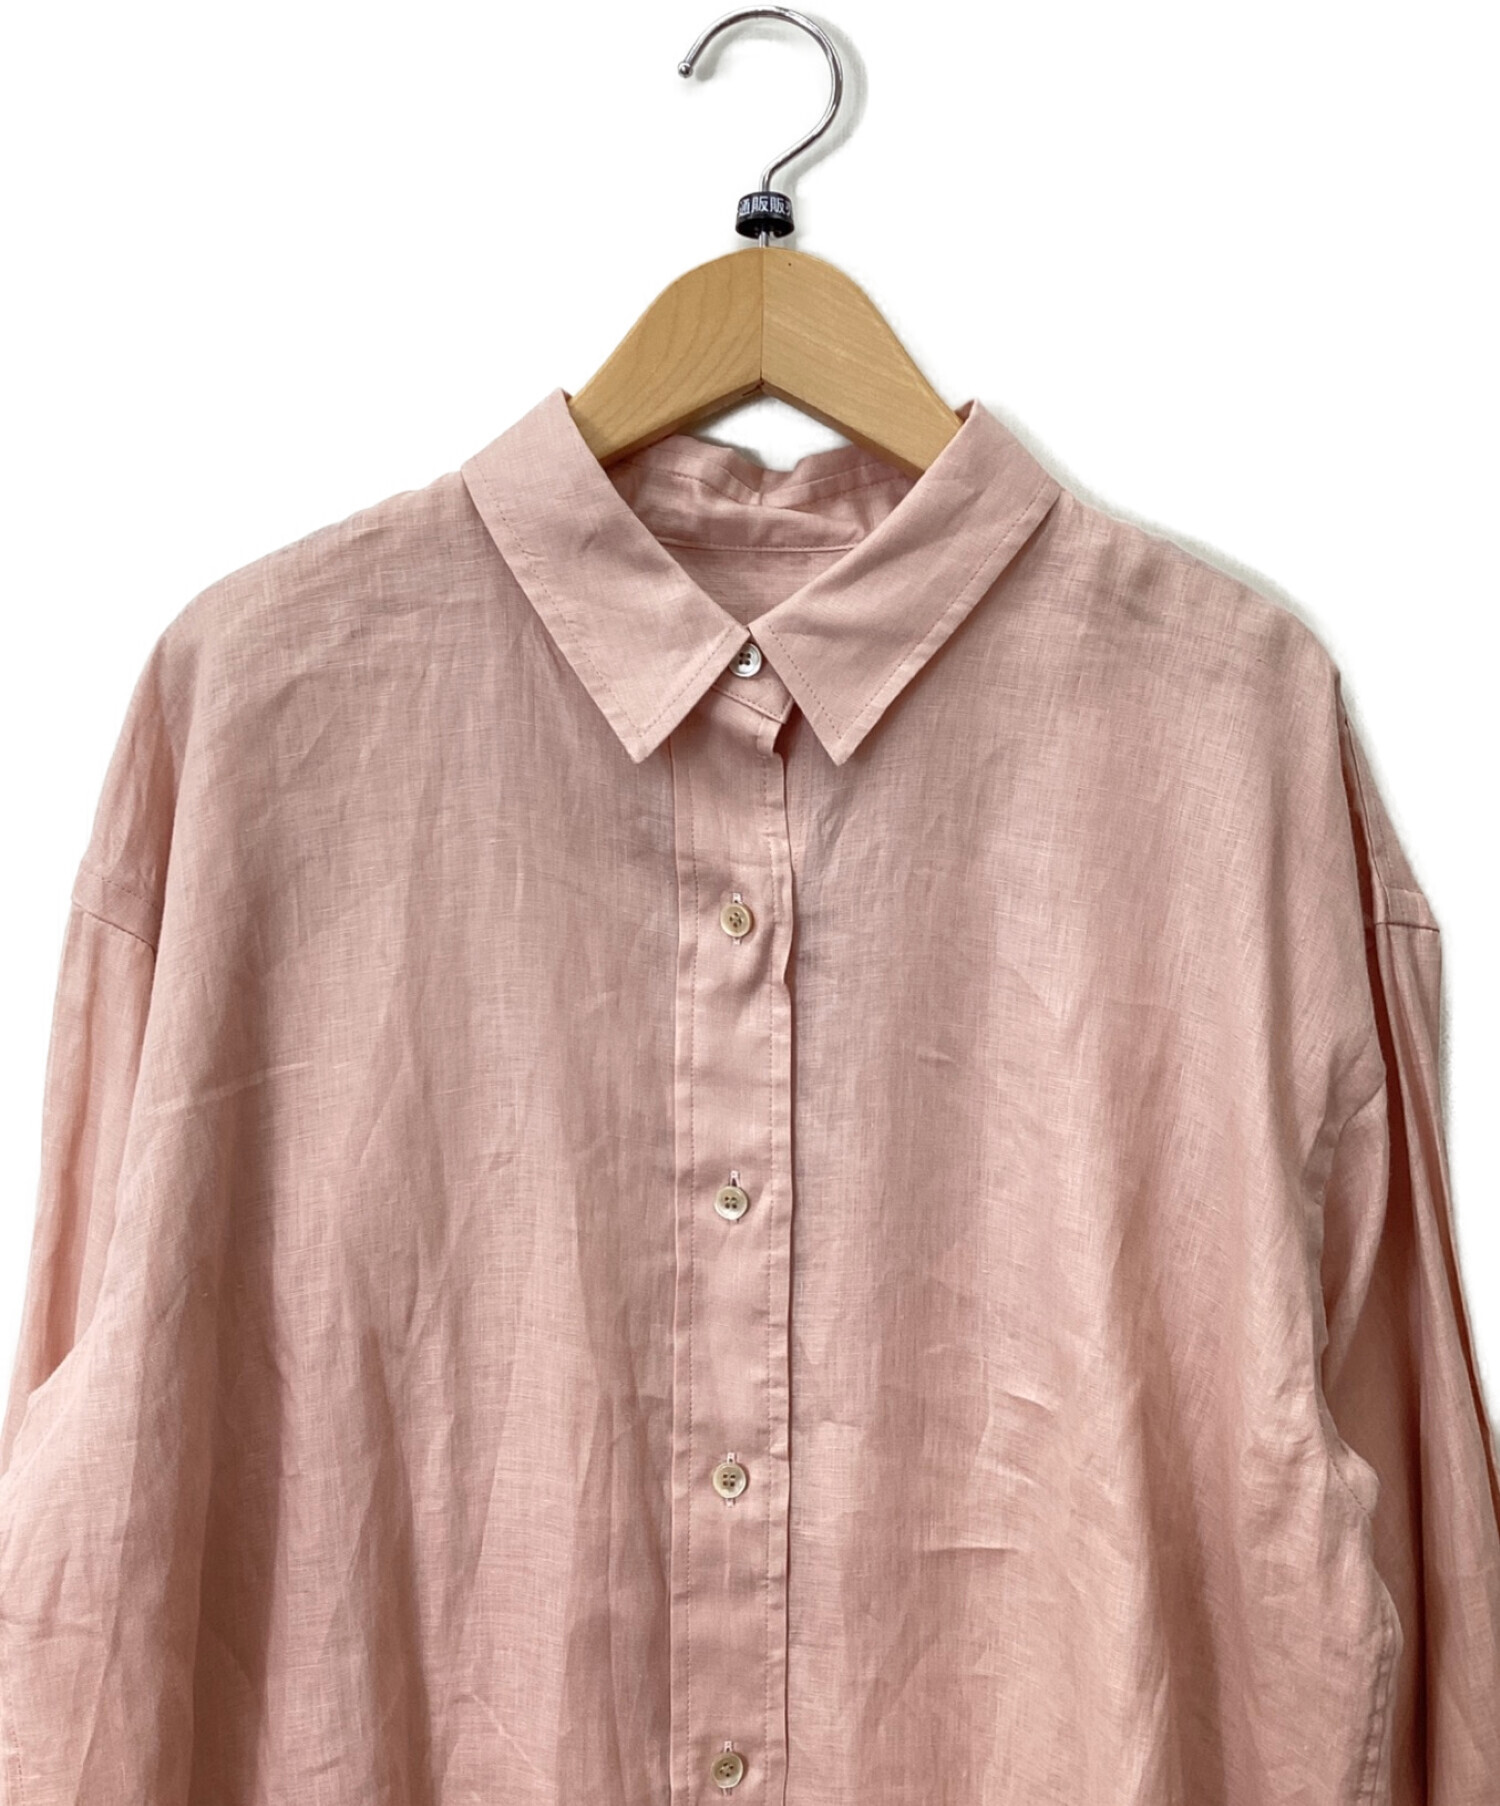 Noble (ノーブル) リネンオーバーコクーンシャツ ピンク サイズ:なし